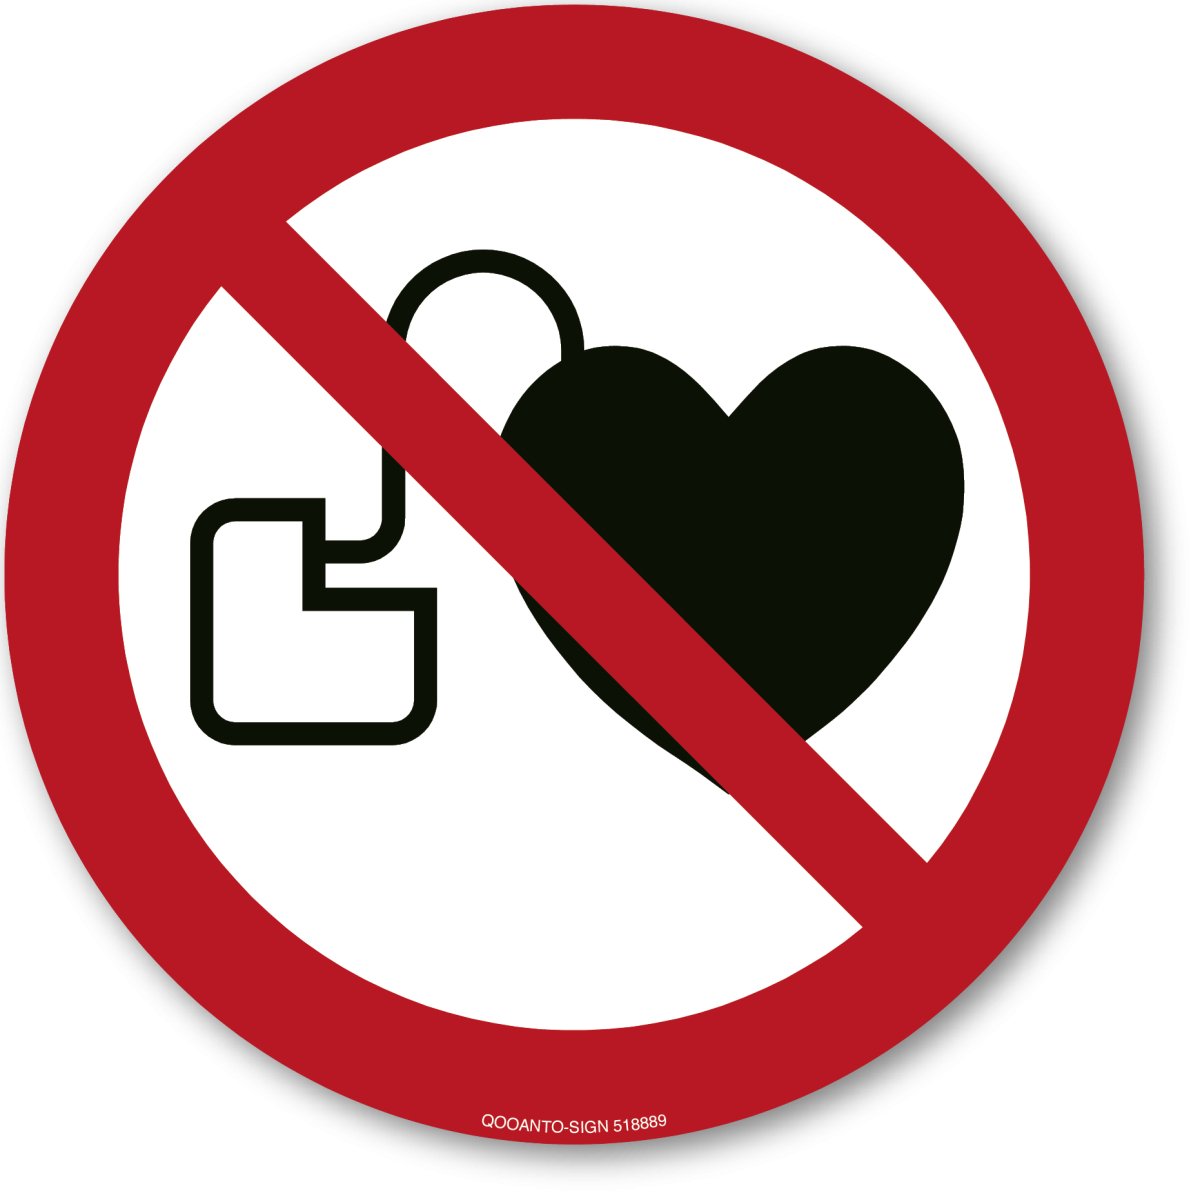 Kein Zutritt Für Personen Mit Herzschrittmachern Oder Implantierten Defibrillatoren, EN ISO 7010, P007 Verbotsschild oder Aufkleber aus Alu-Verbund oder Selbstklebefolie mit UV-Schutz - QOOANTO-SIGN